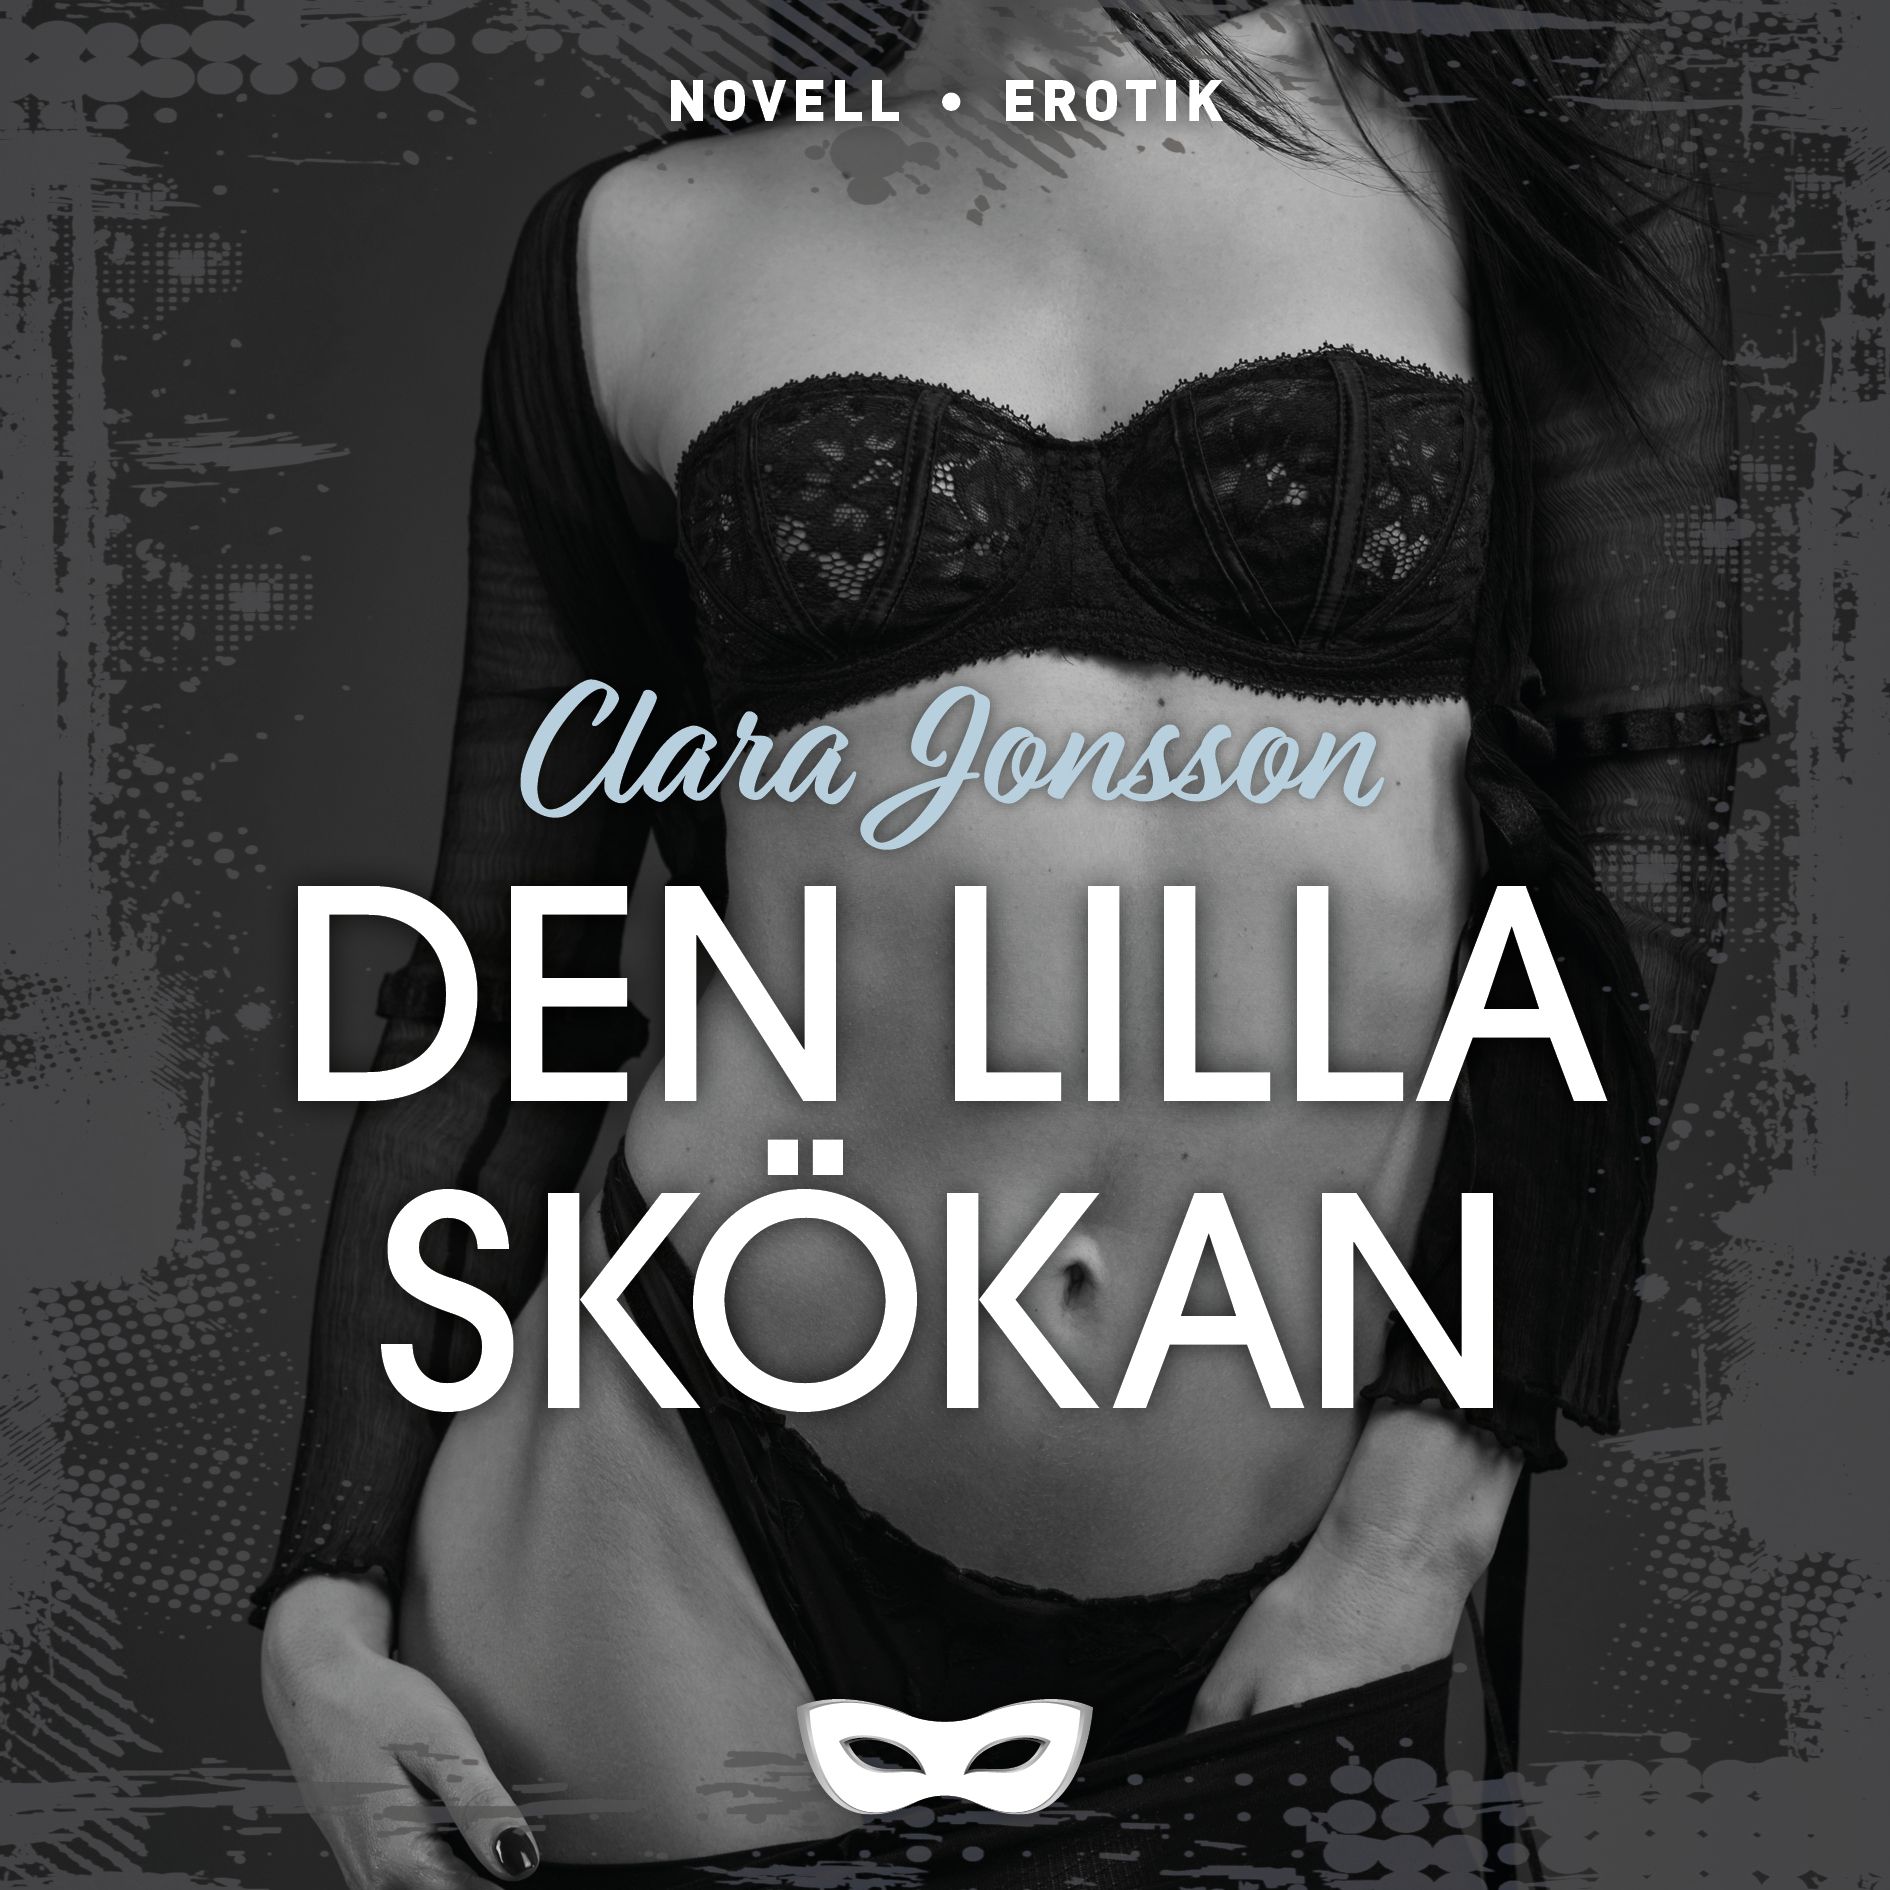 Den lilla skökan, ljudbok av Clara Jonsson